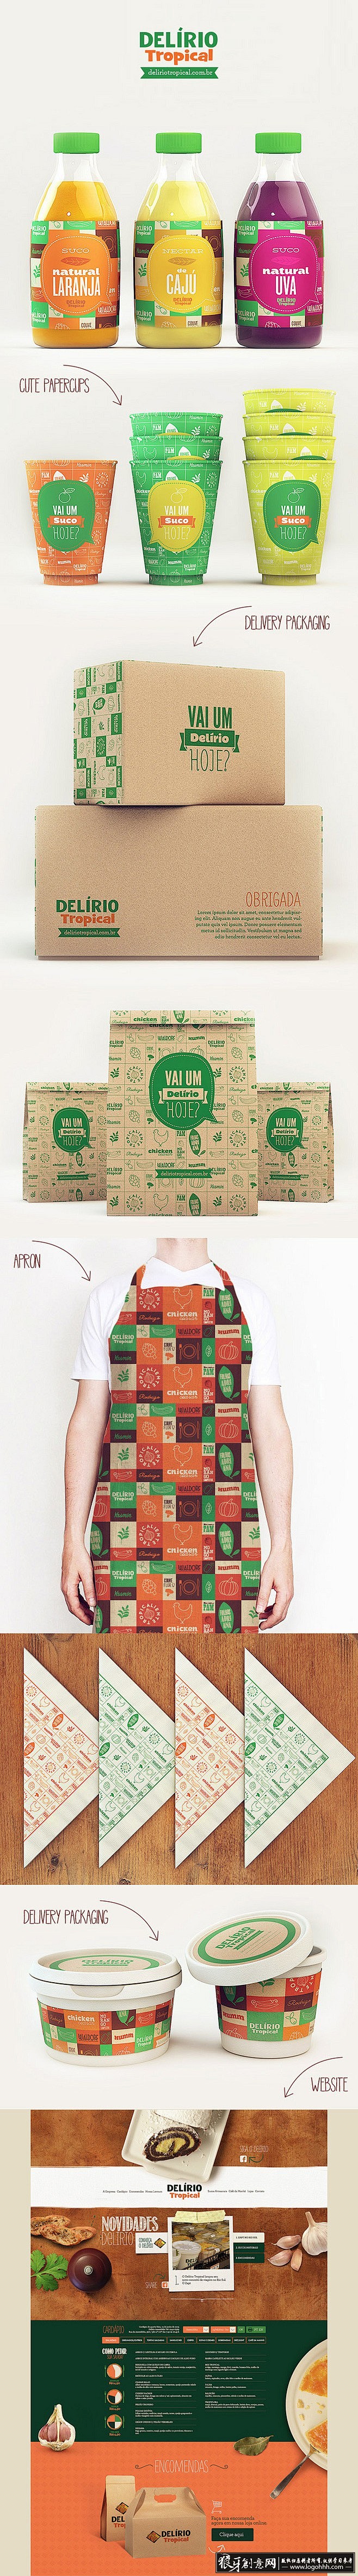 [包装灵感] 创意快餐饮品品牌包装设计 ...